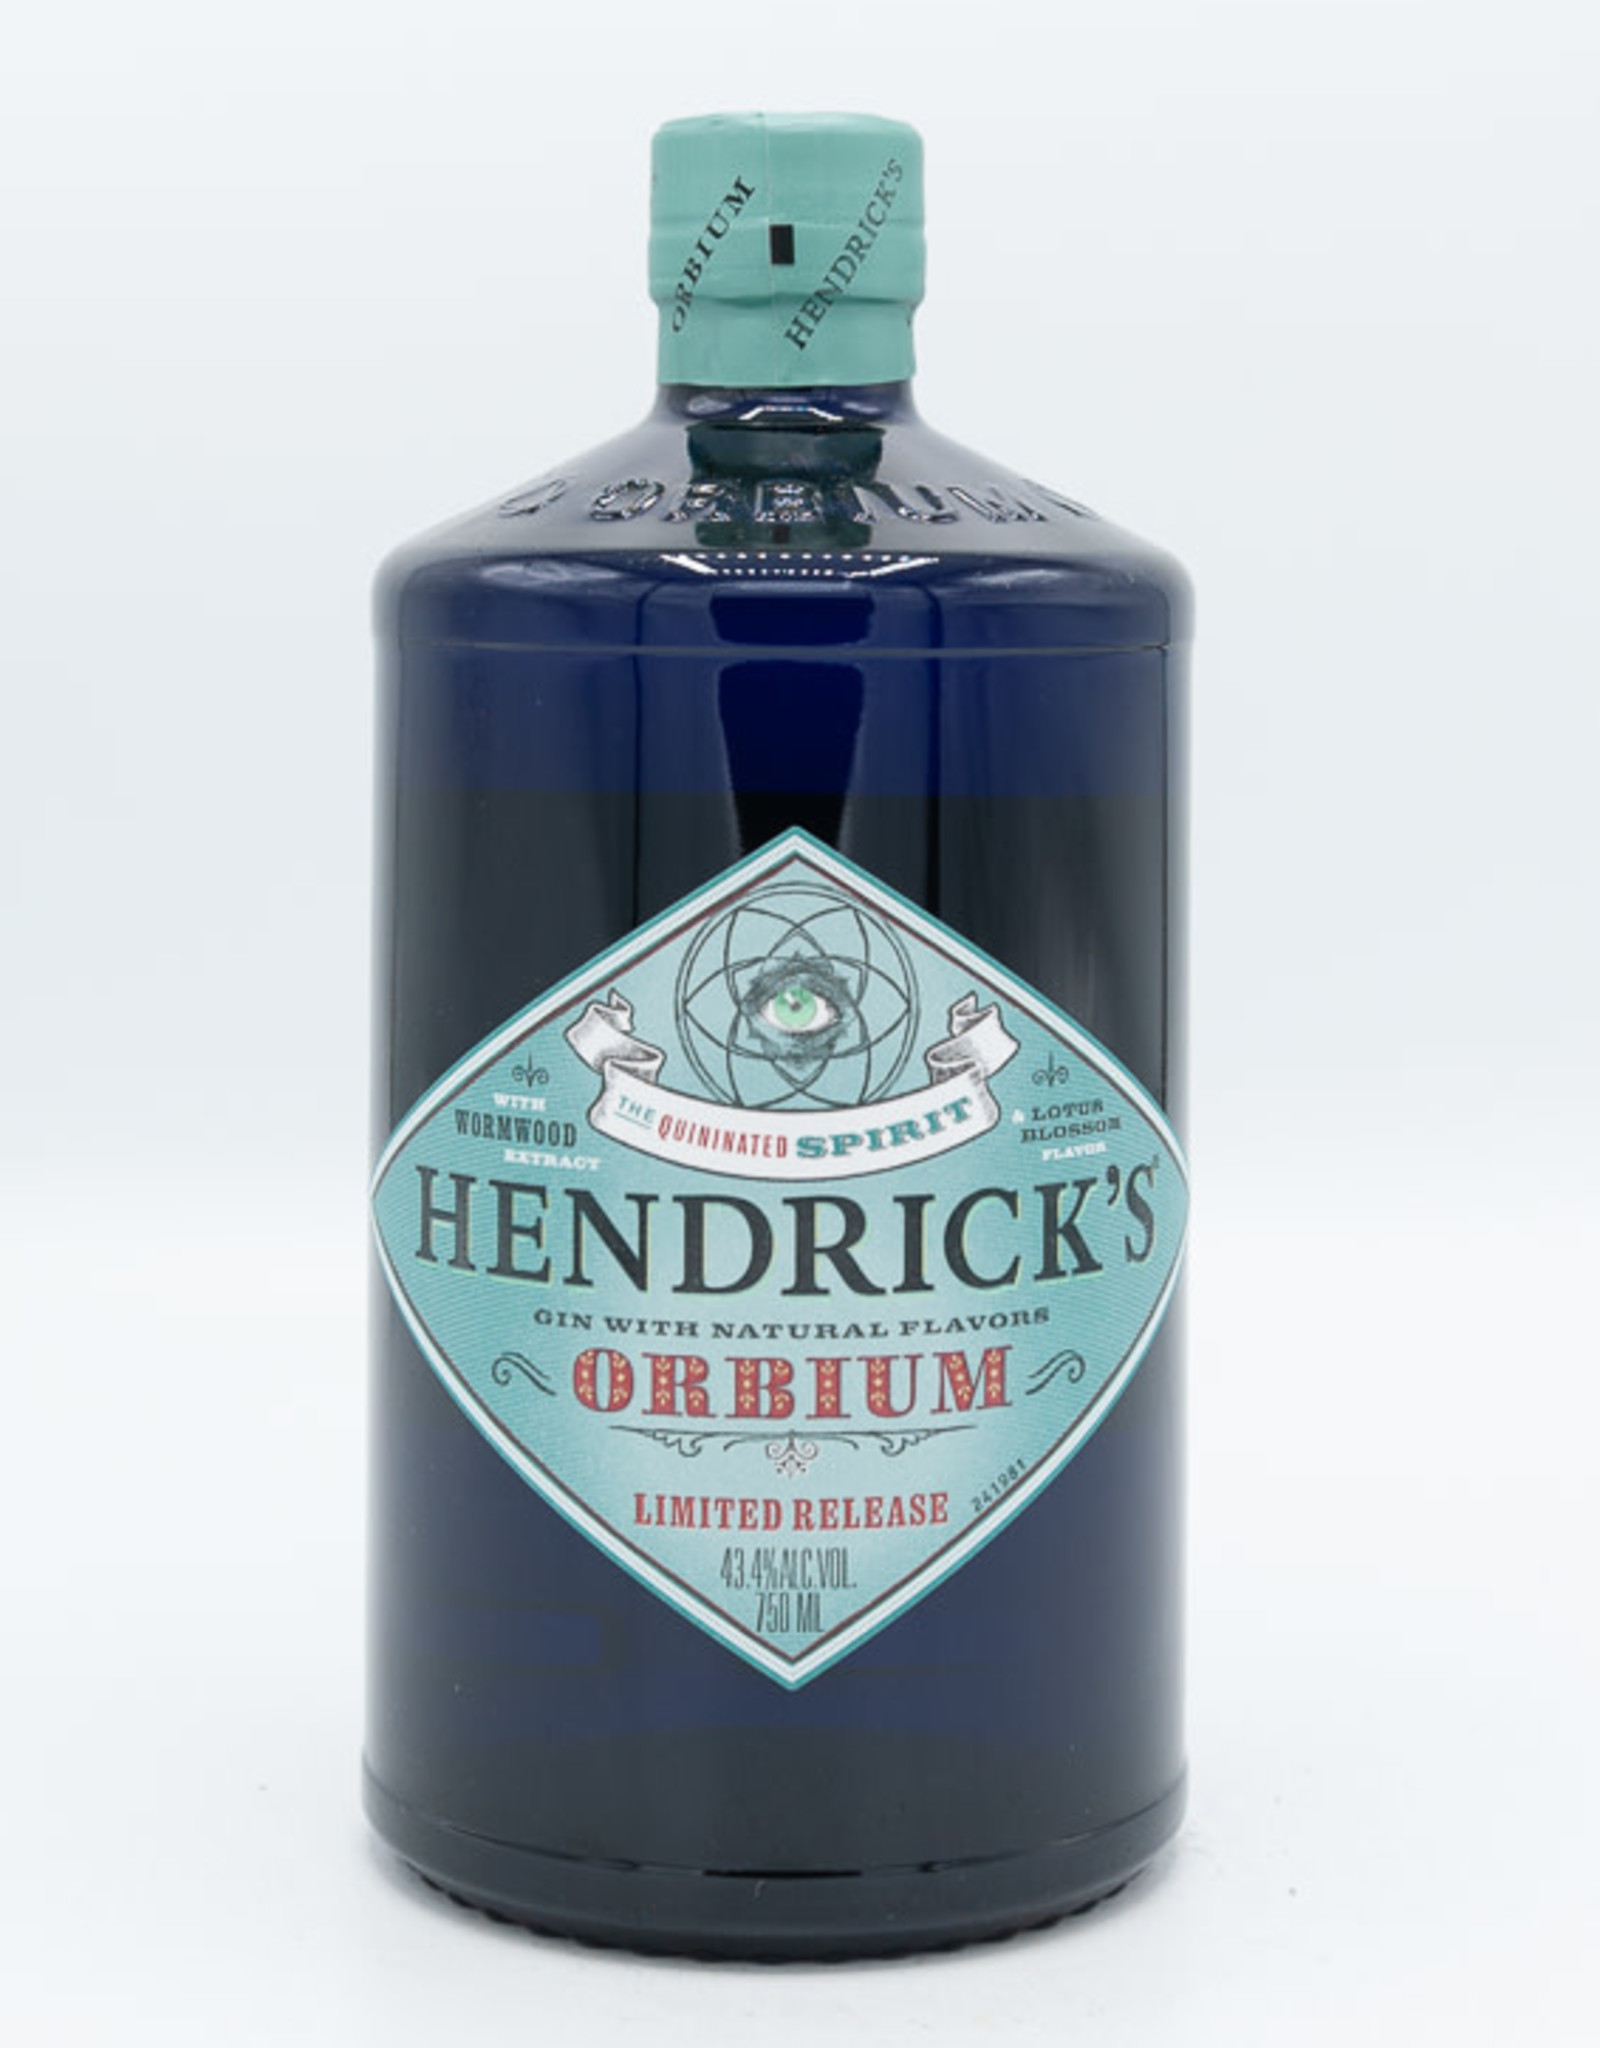 Hendrick's Hendrick's Orbium Gin